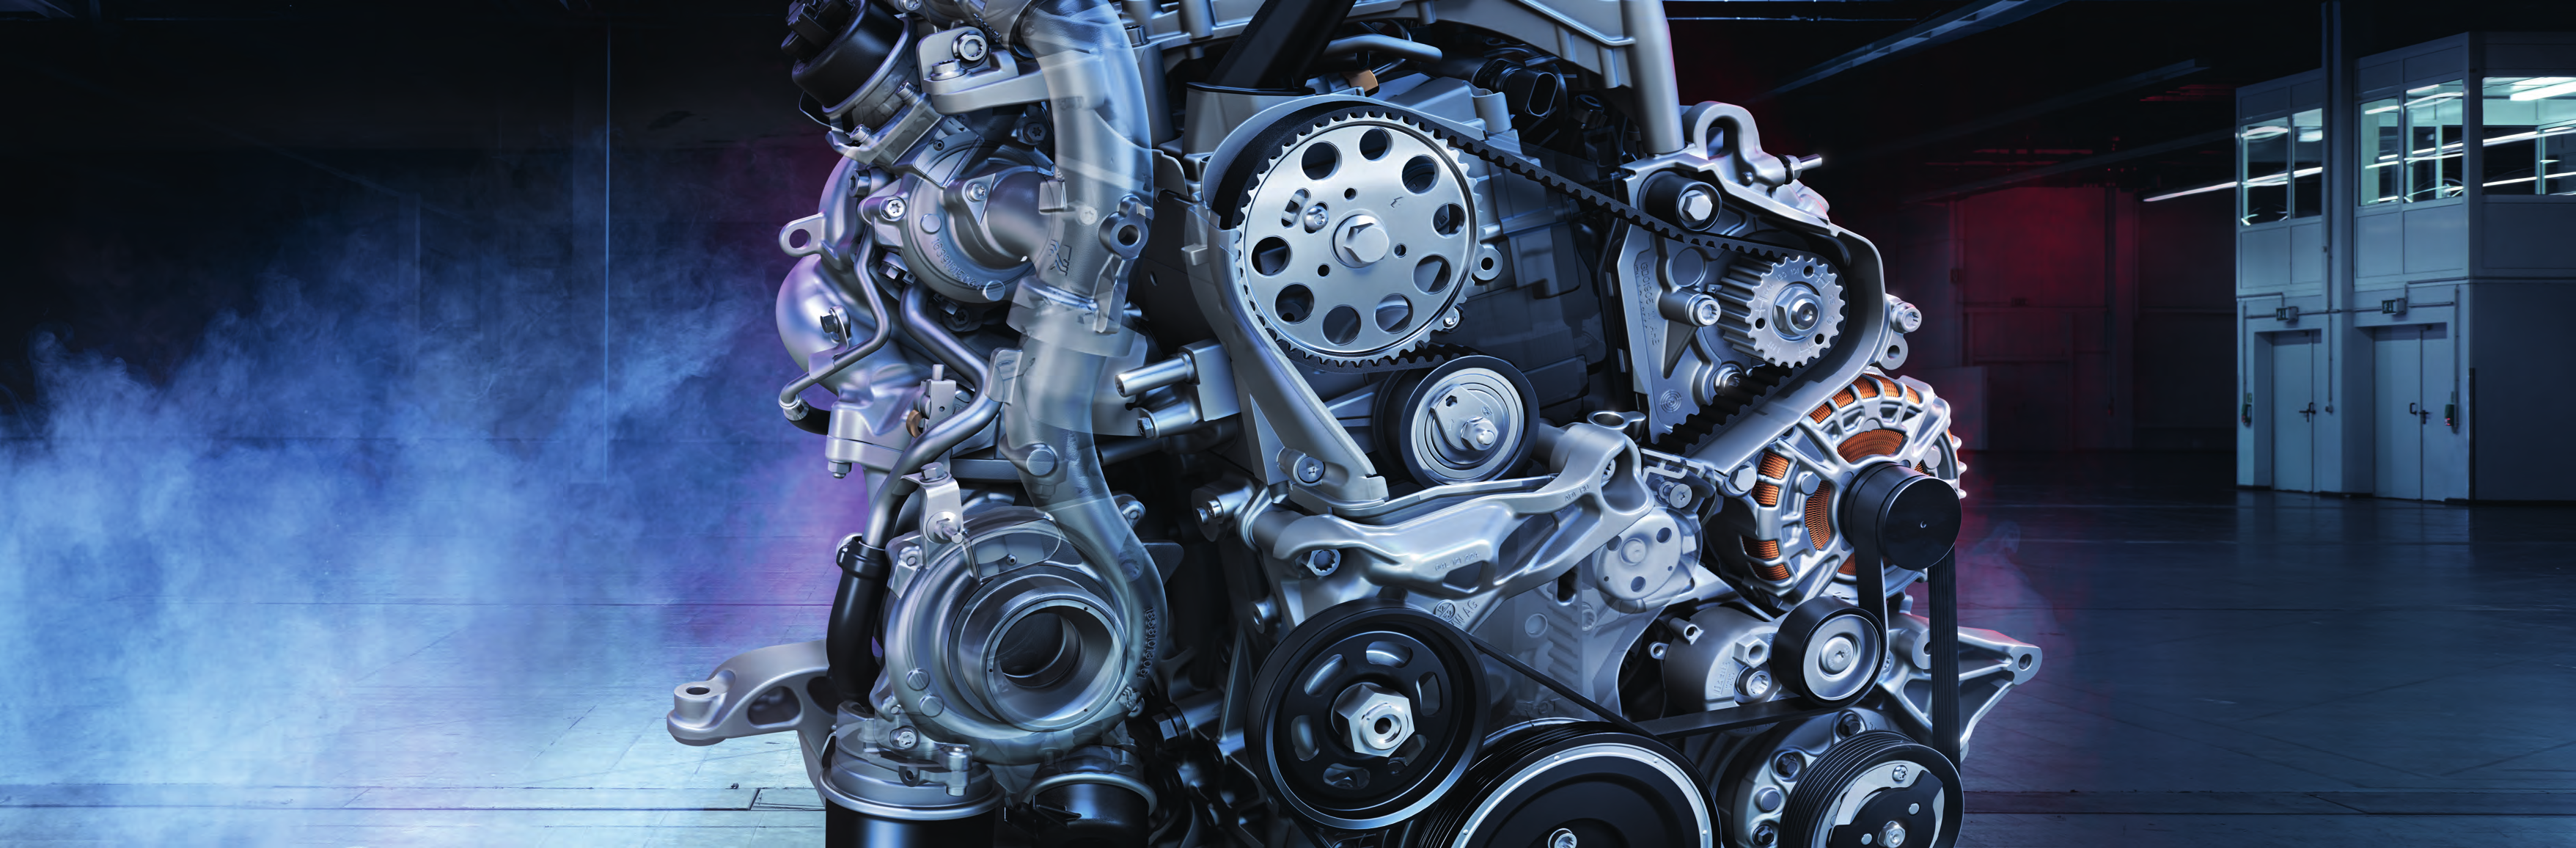 Nově vyvinuté motory TDI. Agregáty s dlouhou životností vyvinuté speciálně pro užitkové vozy.